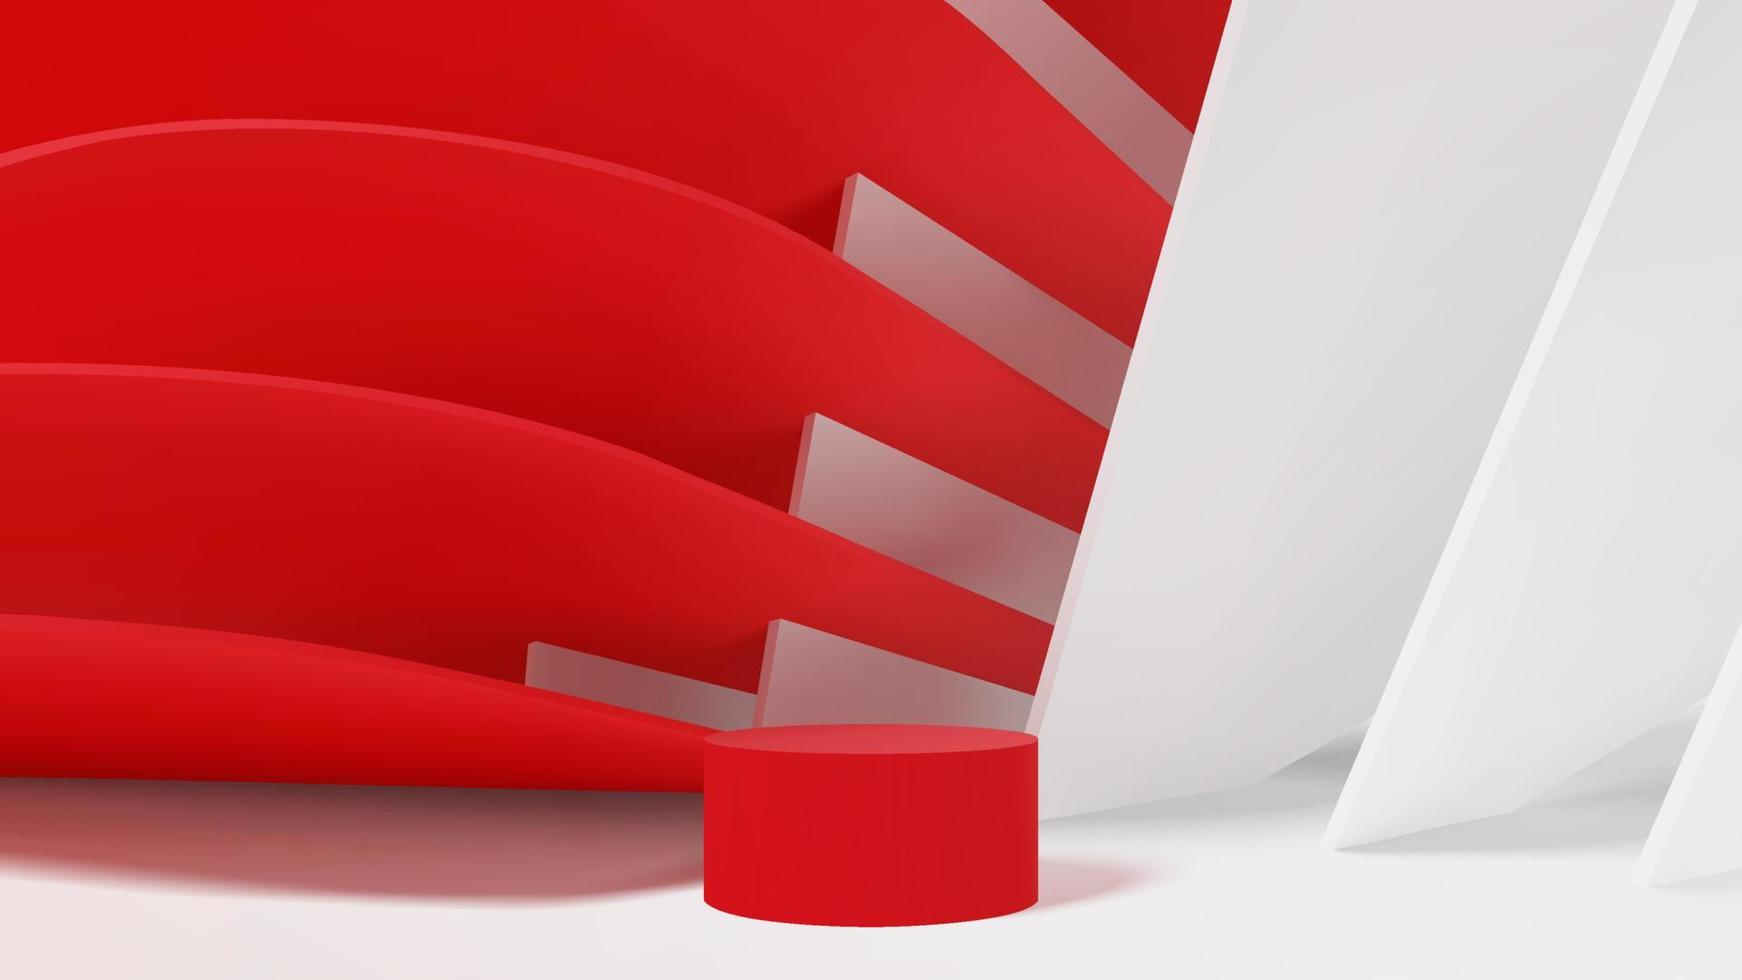 moderne abstracte geometriescène met podium voor mockup-sjabloon voor productpresentatie. rode en witte minimalistische architectuur vorm render achtergrond vector